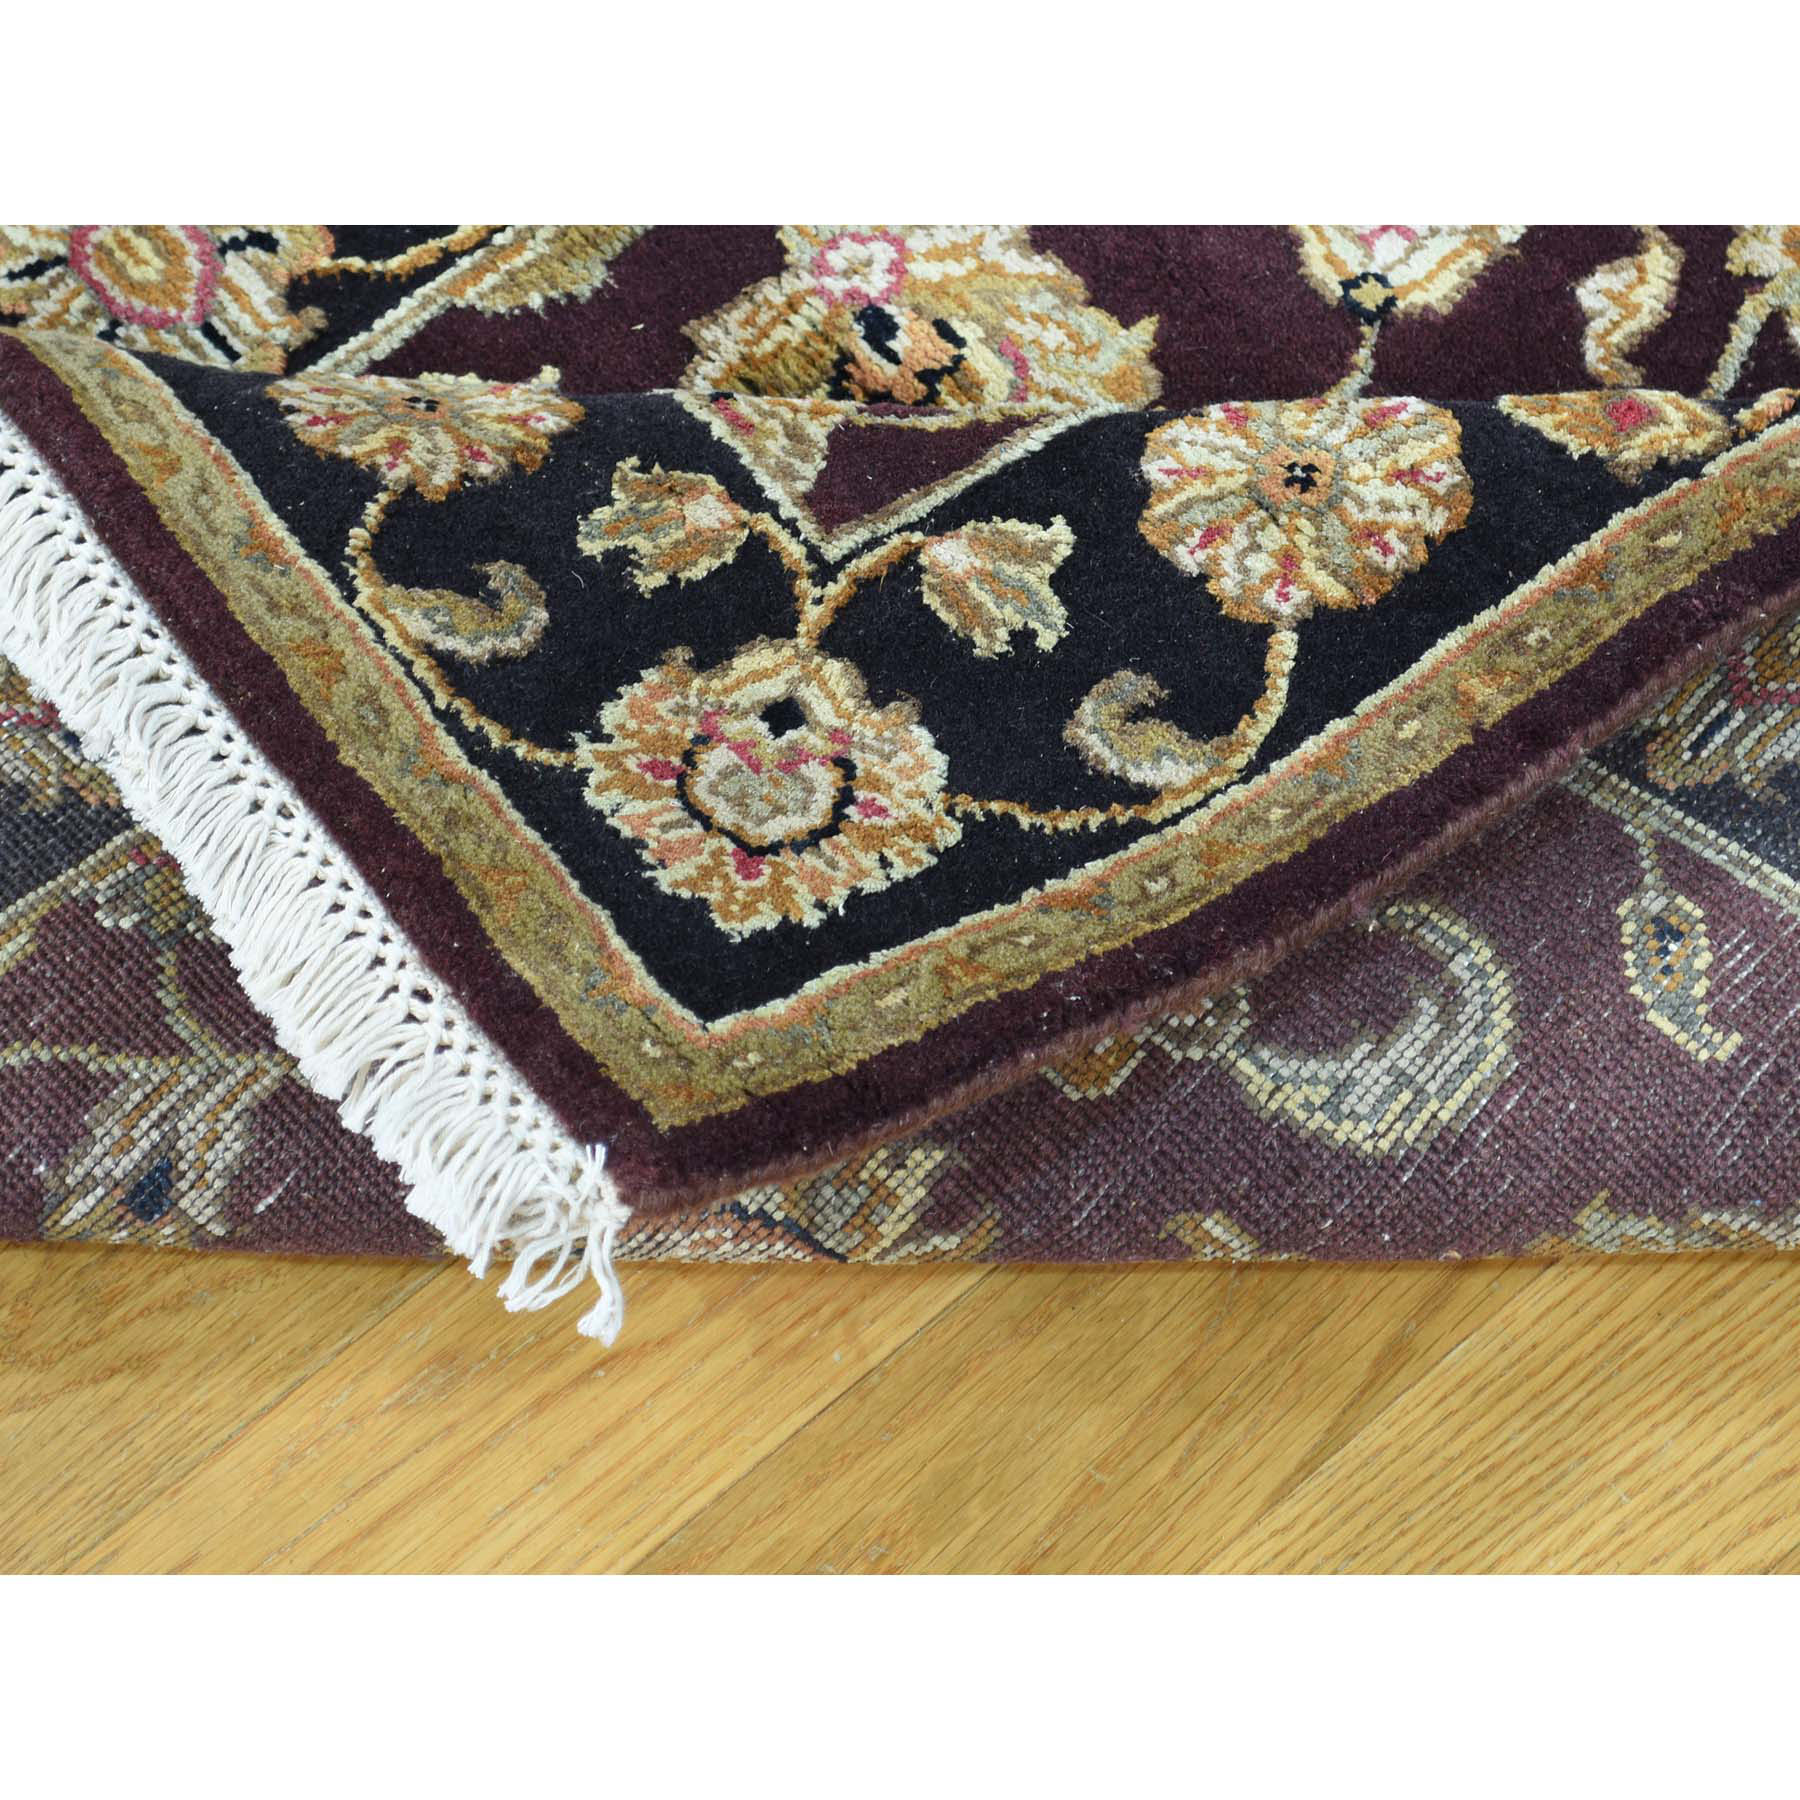 2-6 x16-3  Handmade Half Wool Half Silk Burgundy Rajasthan XL Runner Rug 